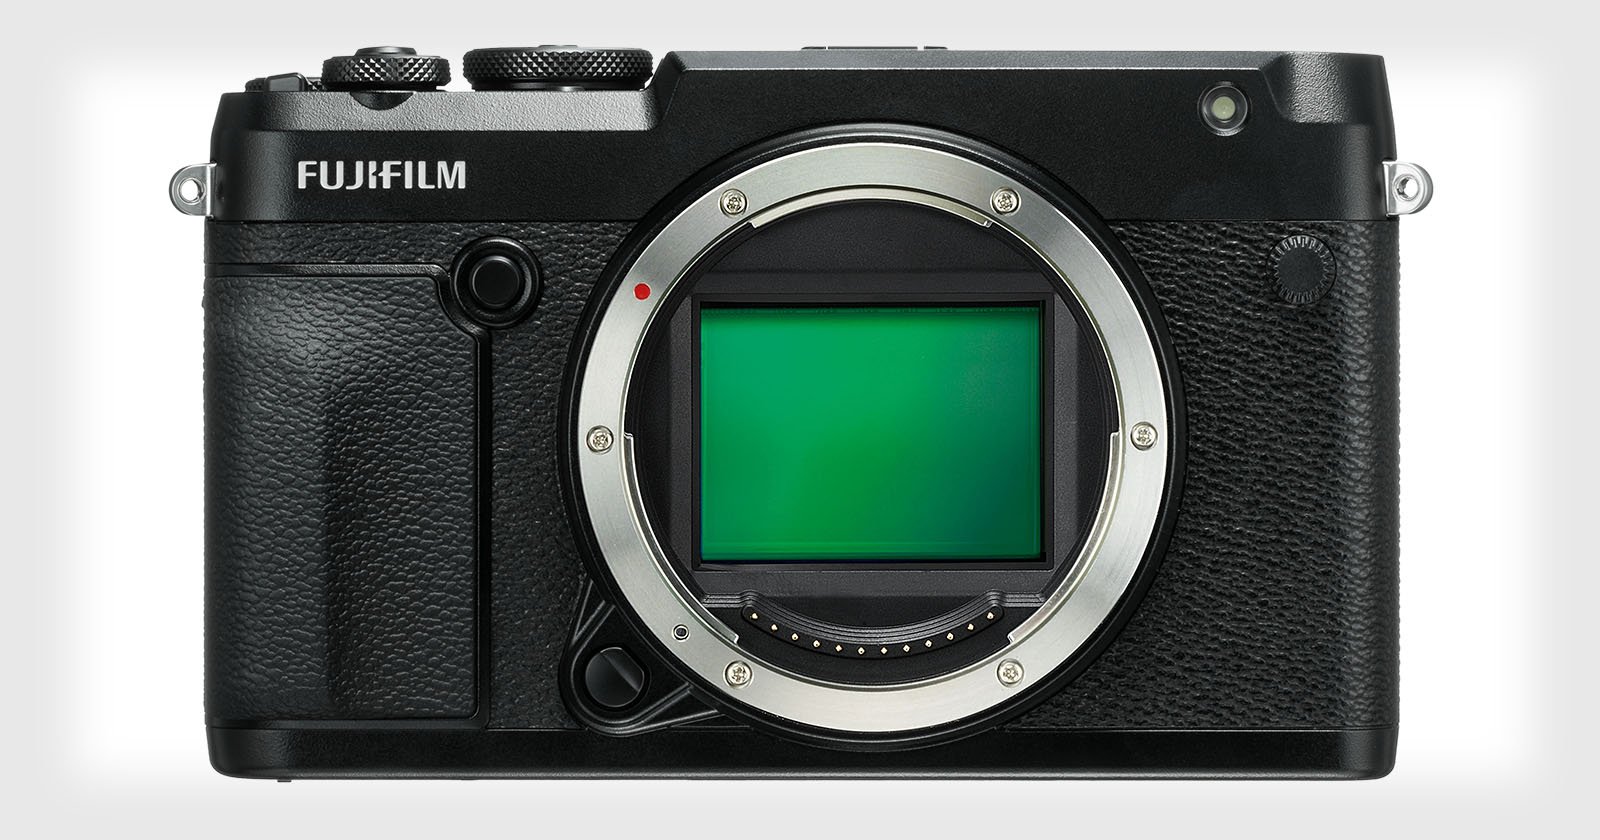 Fujifilm GFX 50R is a 51.4MP Medium Format Rangefinder-style Mirrorless